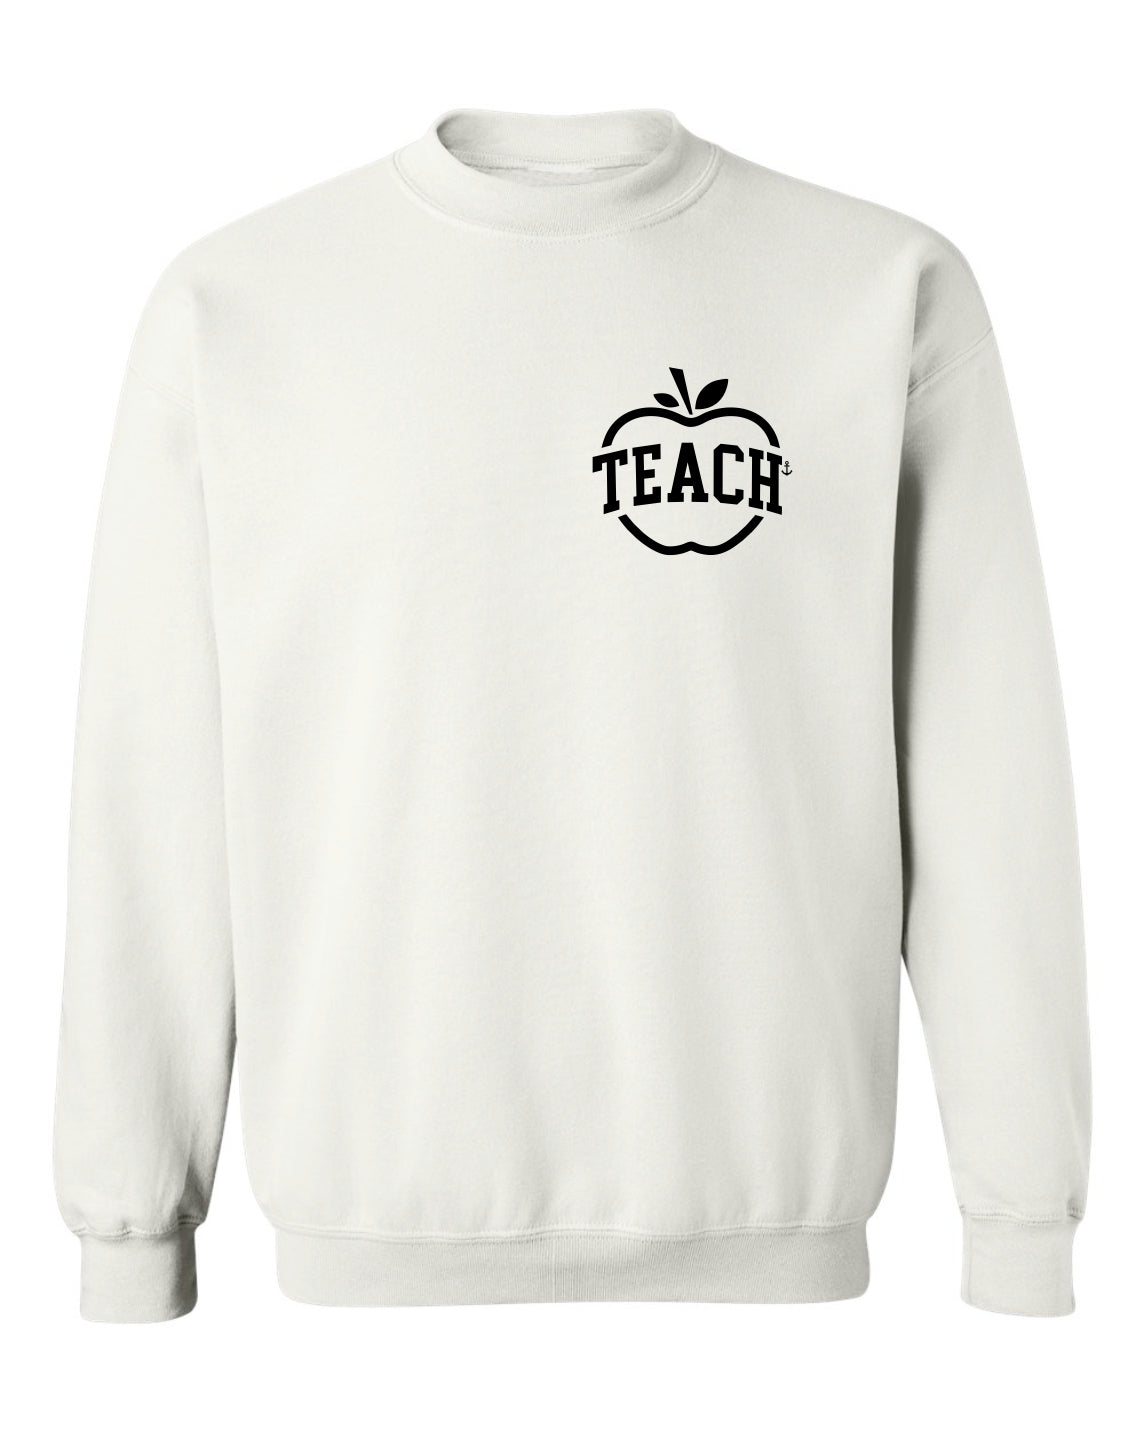 "Teach" Apple Crewneck Sweatshirt